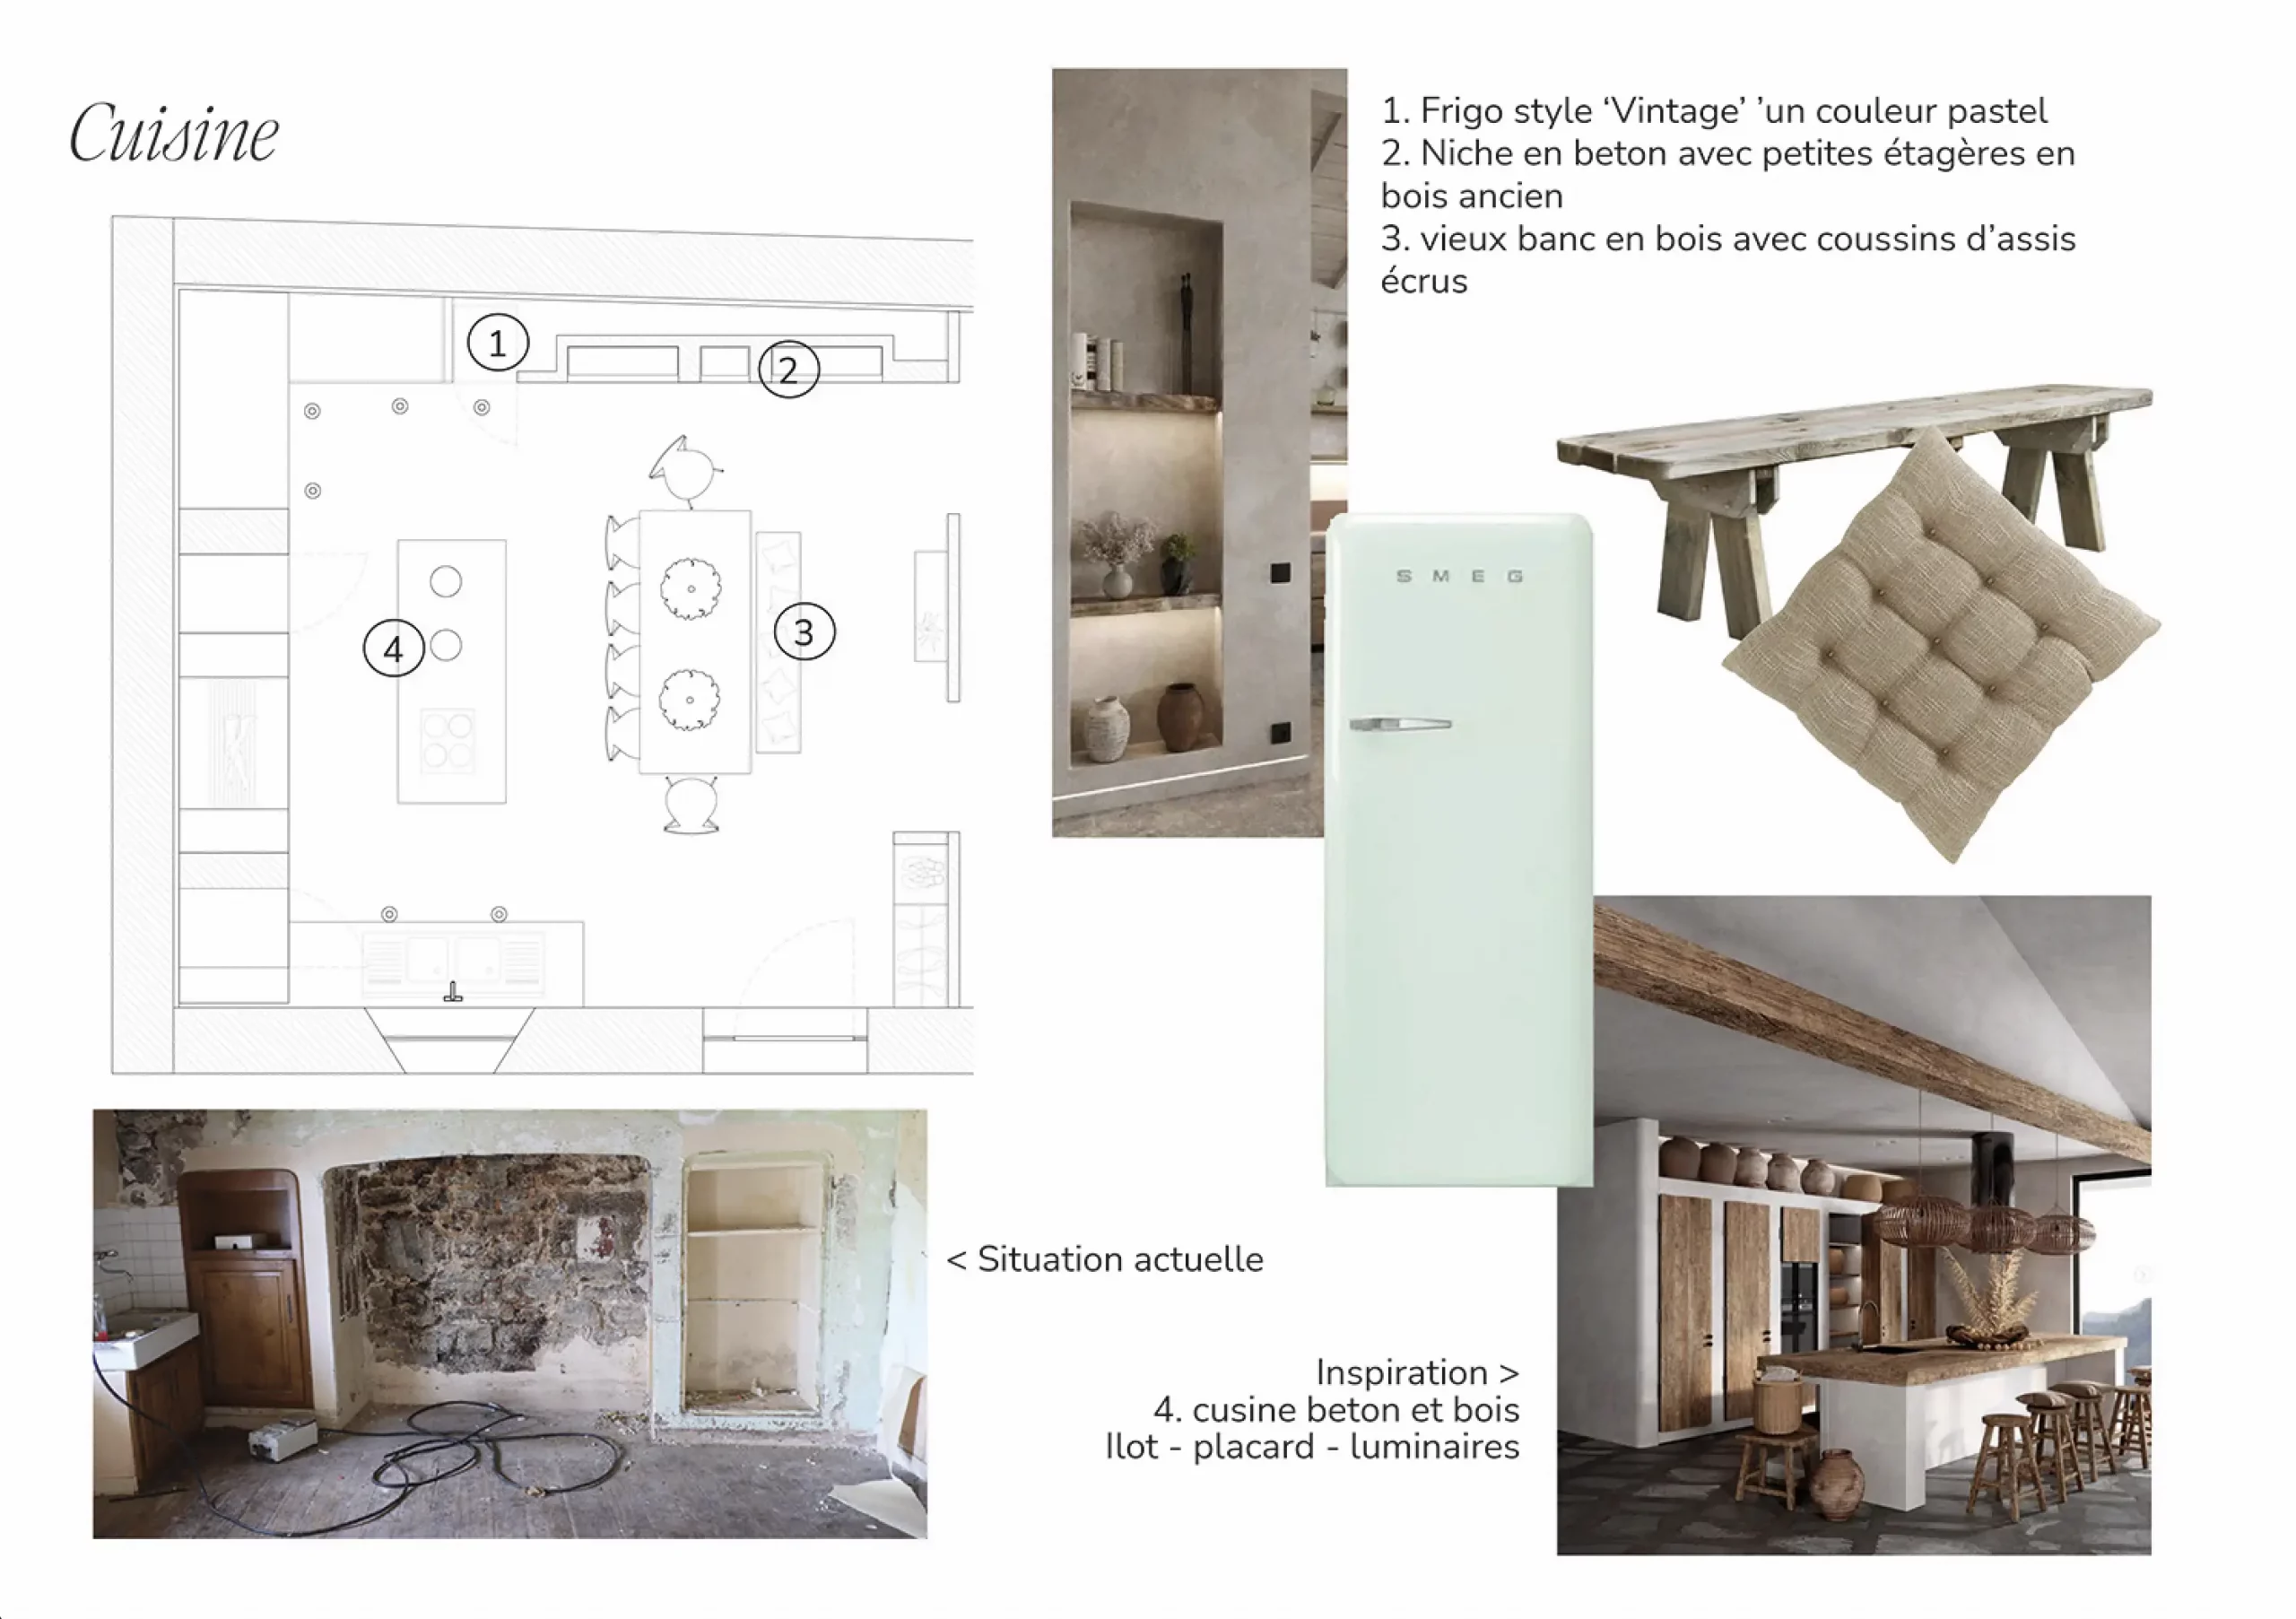 Extrait d'un projet de réaménagement de cuisine par l'architecte d'intérieur Stefania Luraghi, avec plan et inspiration photographique pour le développement.